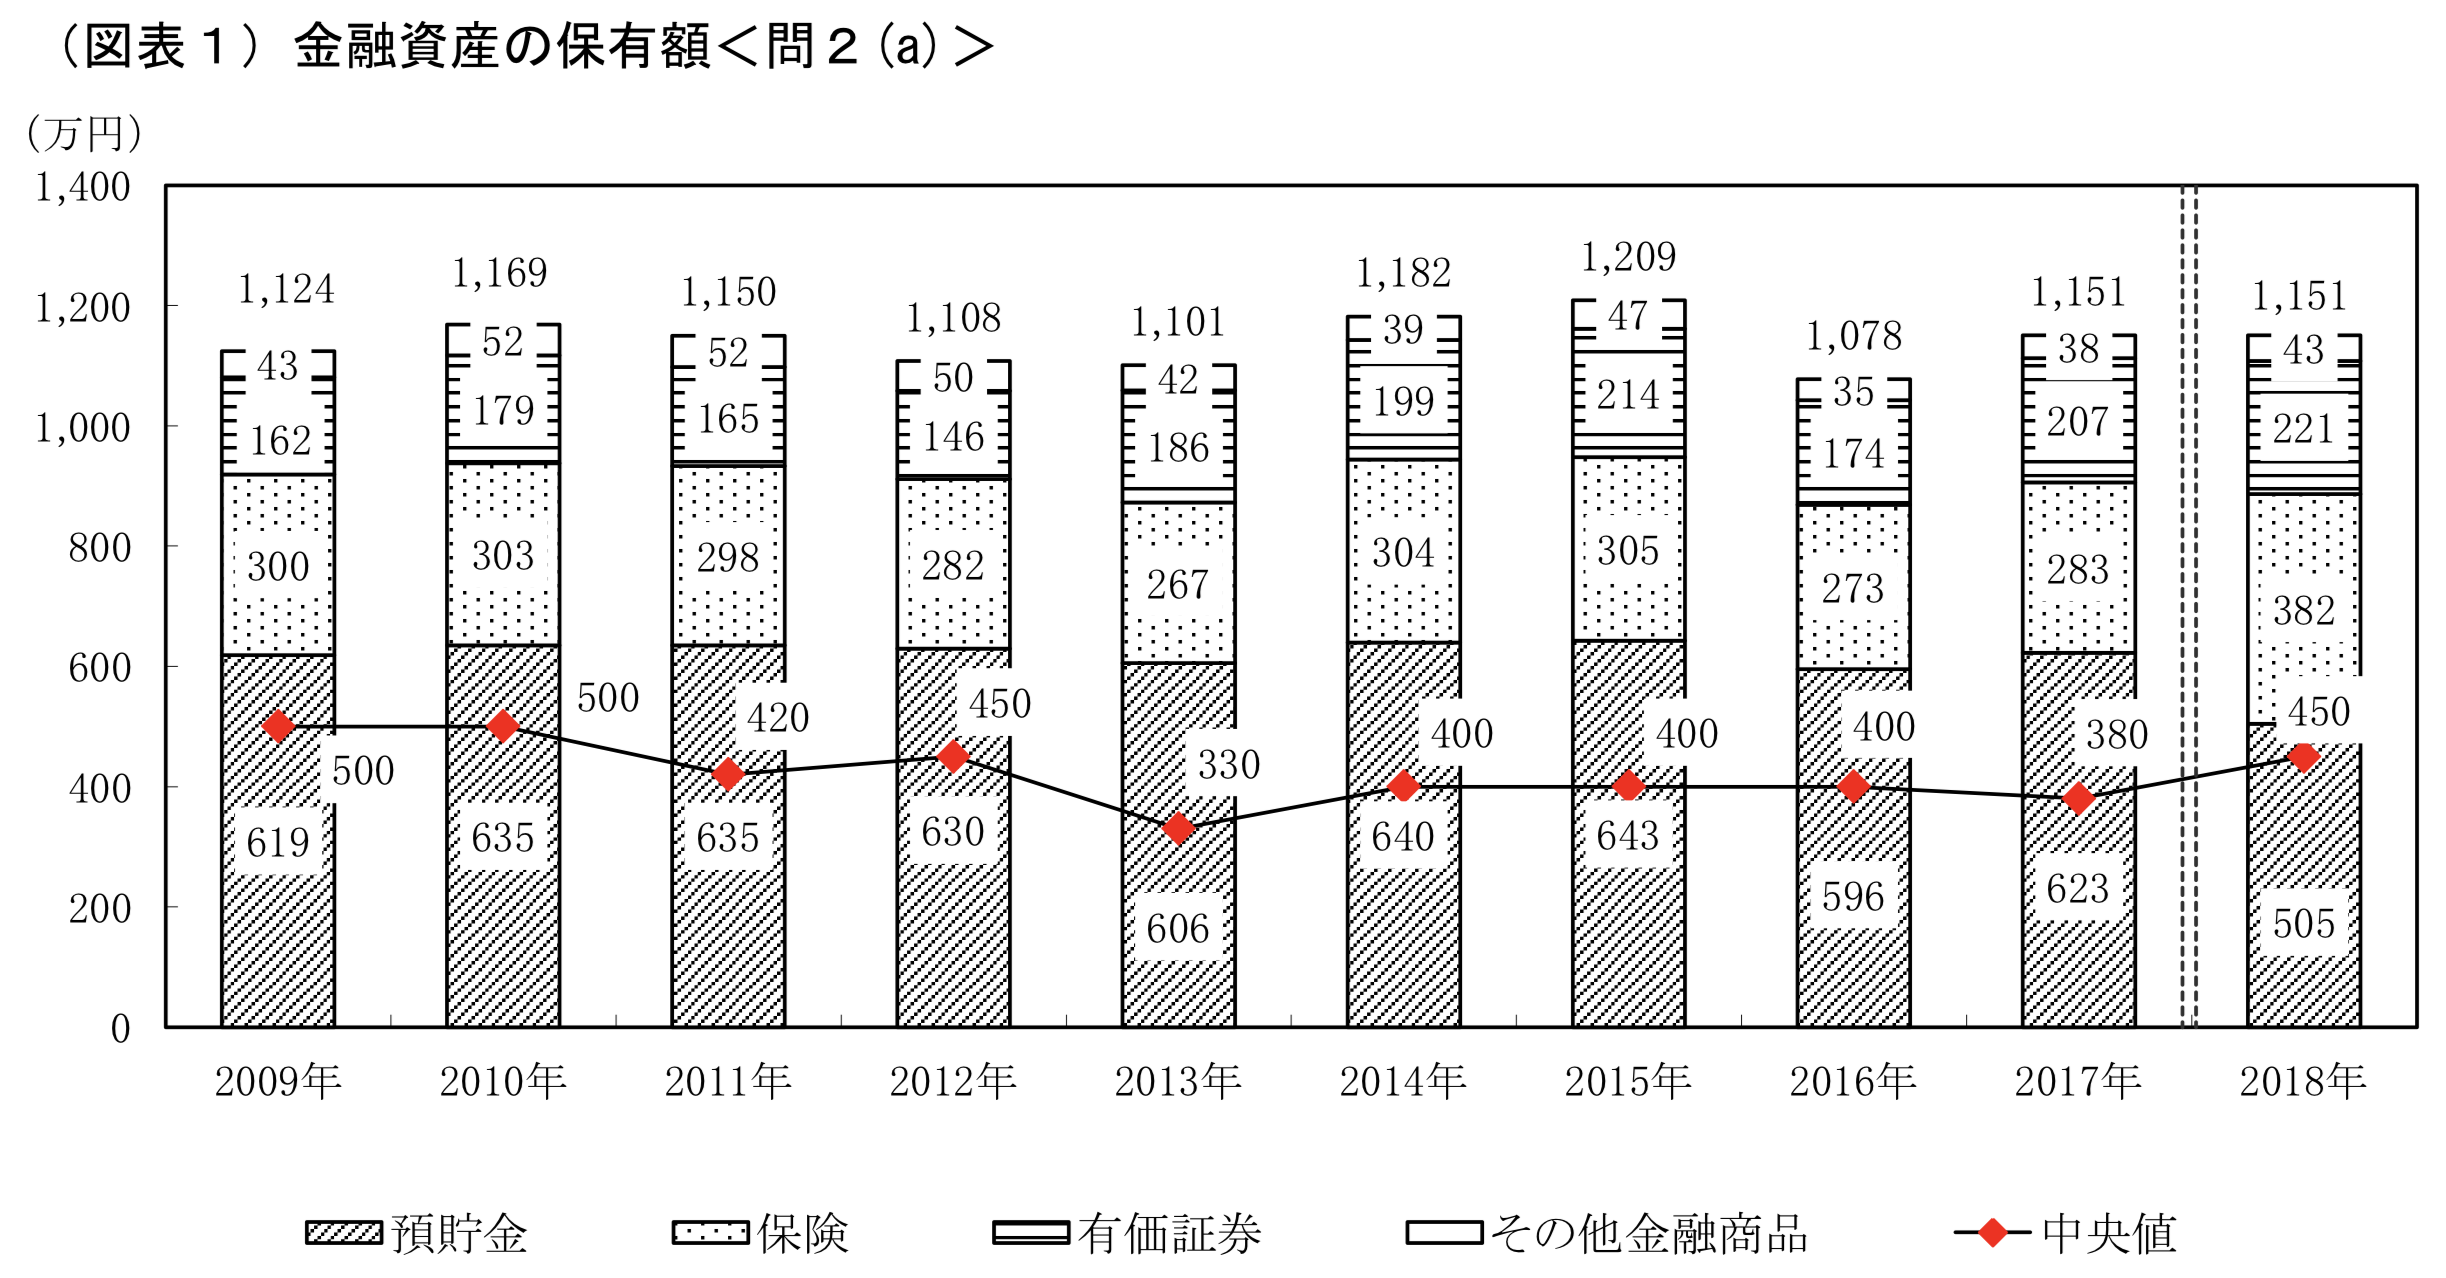 日本の家計資産に占める保険の割合